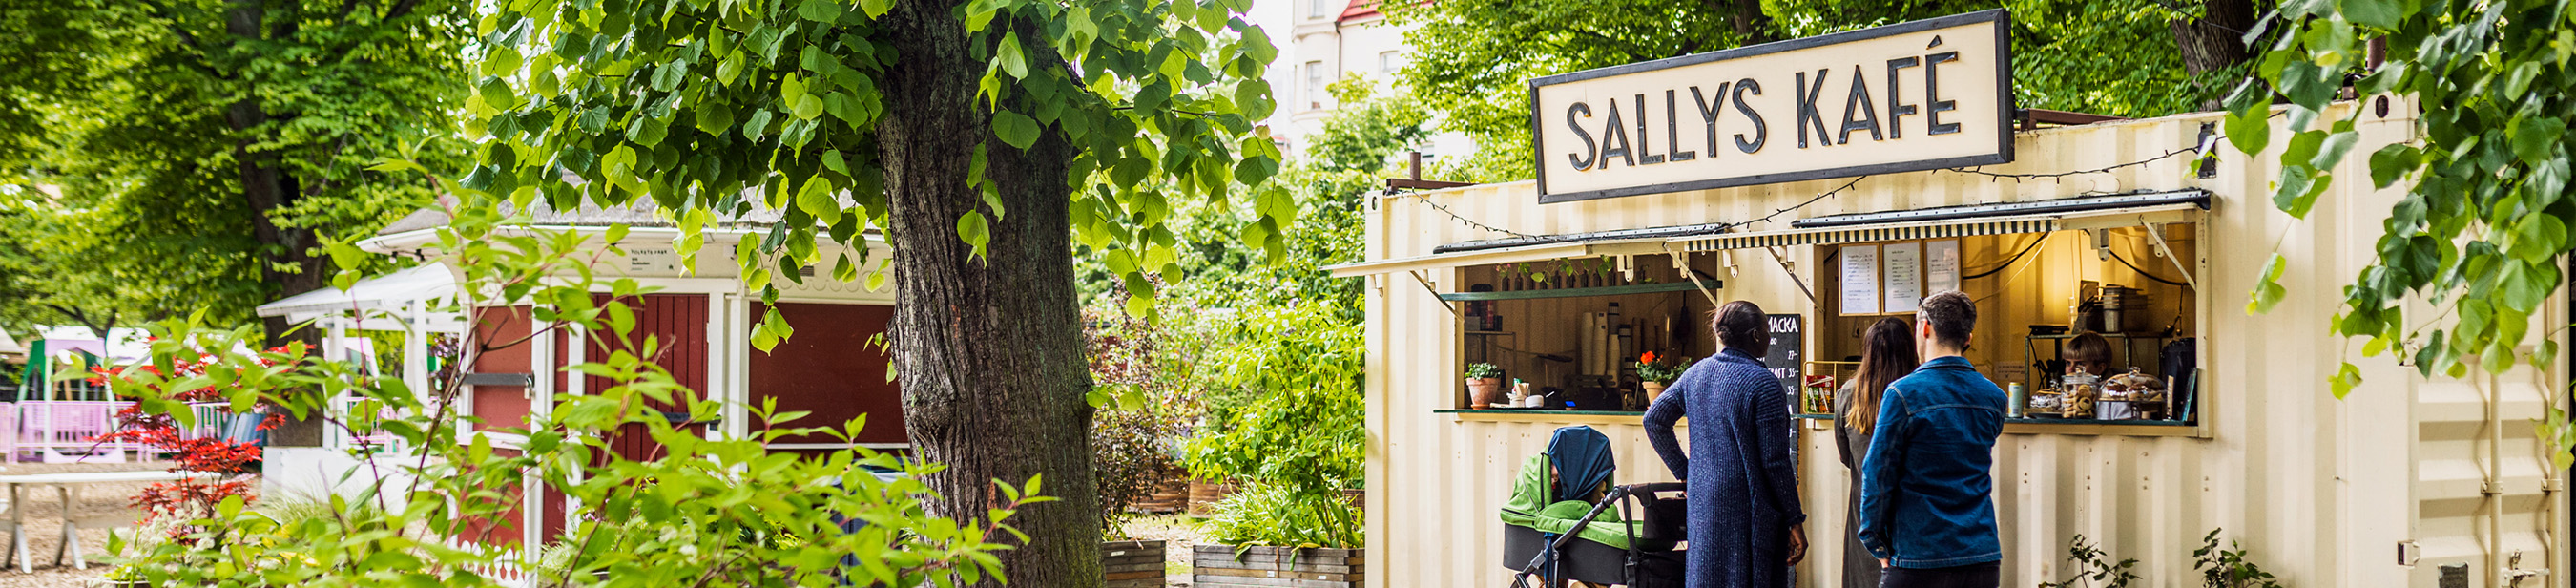 Gröna träd och buskar runt en gul café-byggnad med skylten Sallys Kafé. 